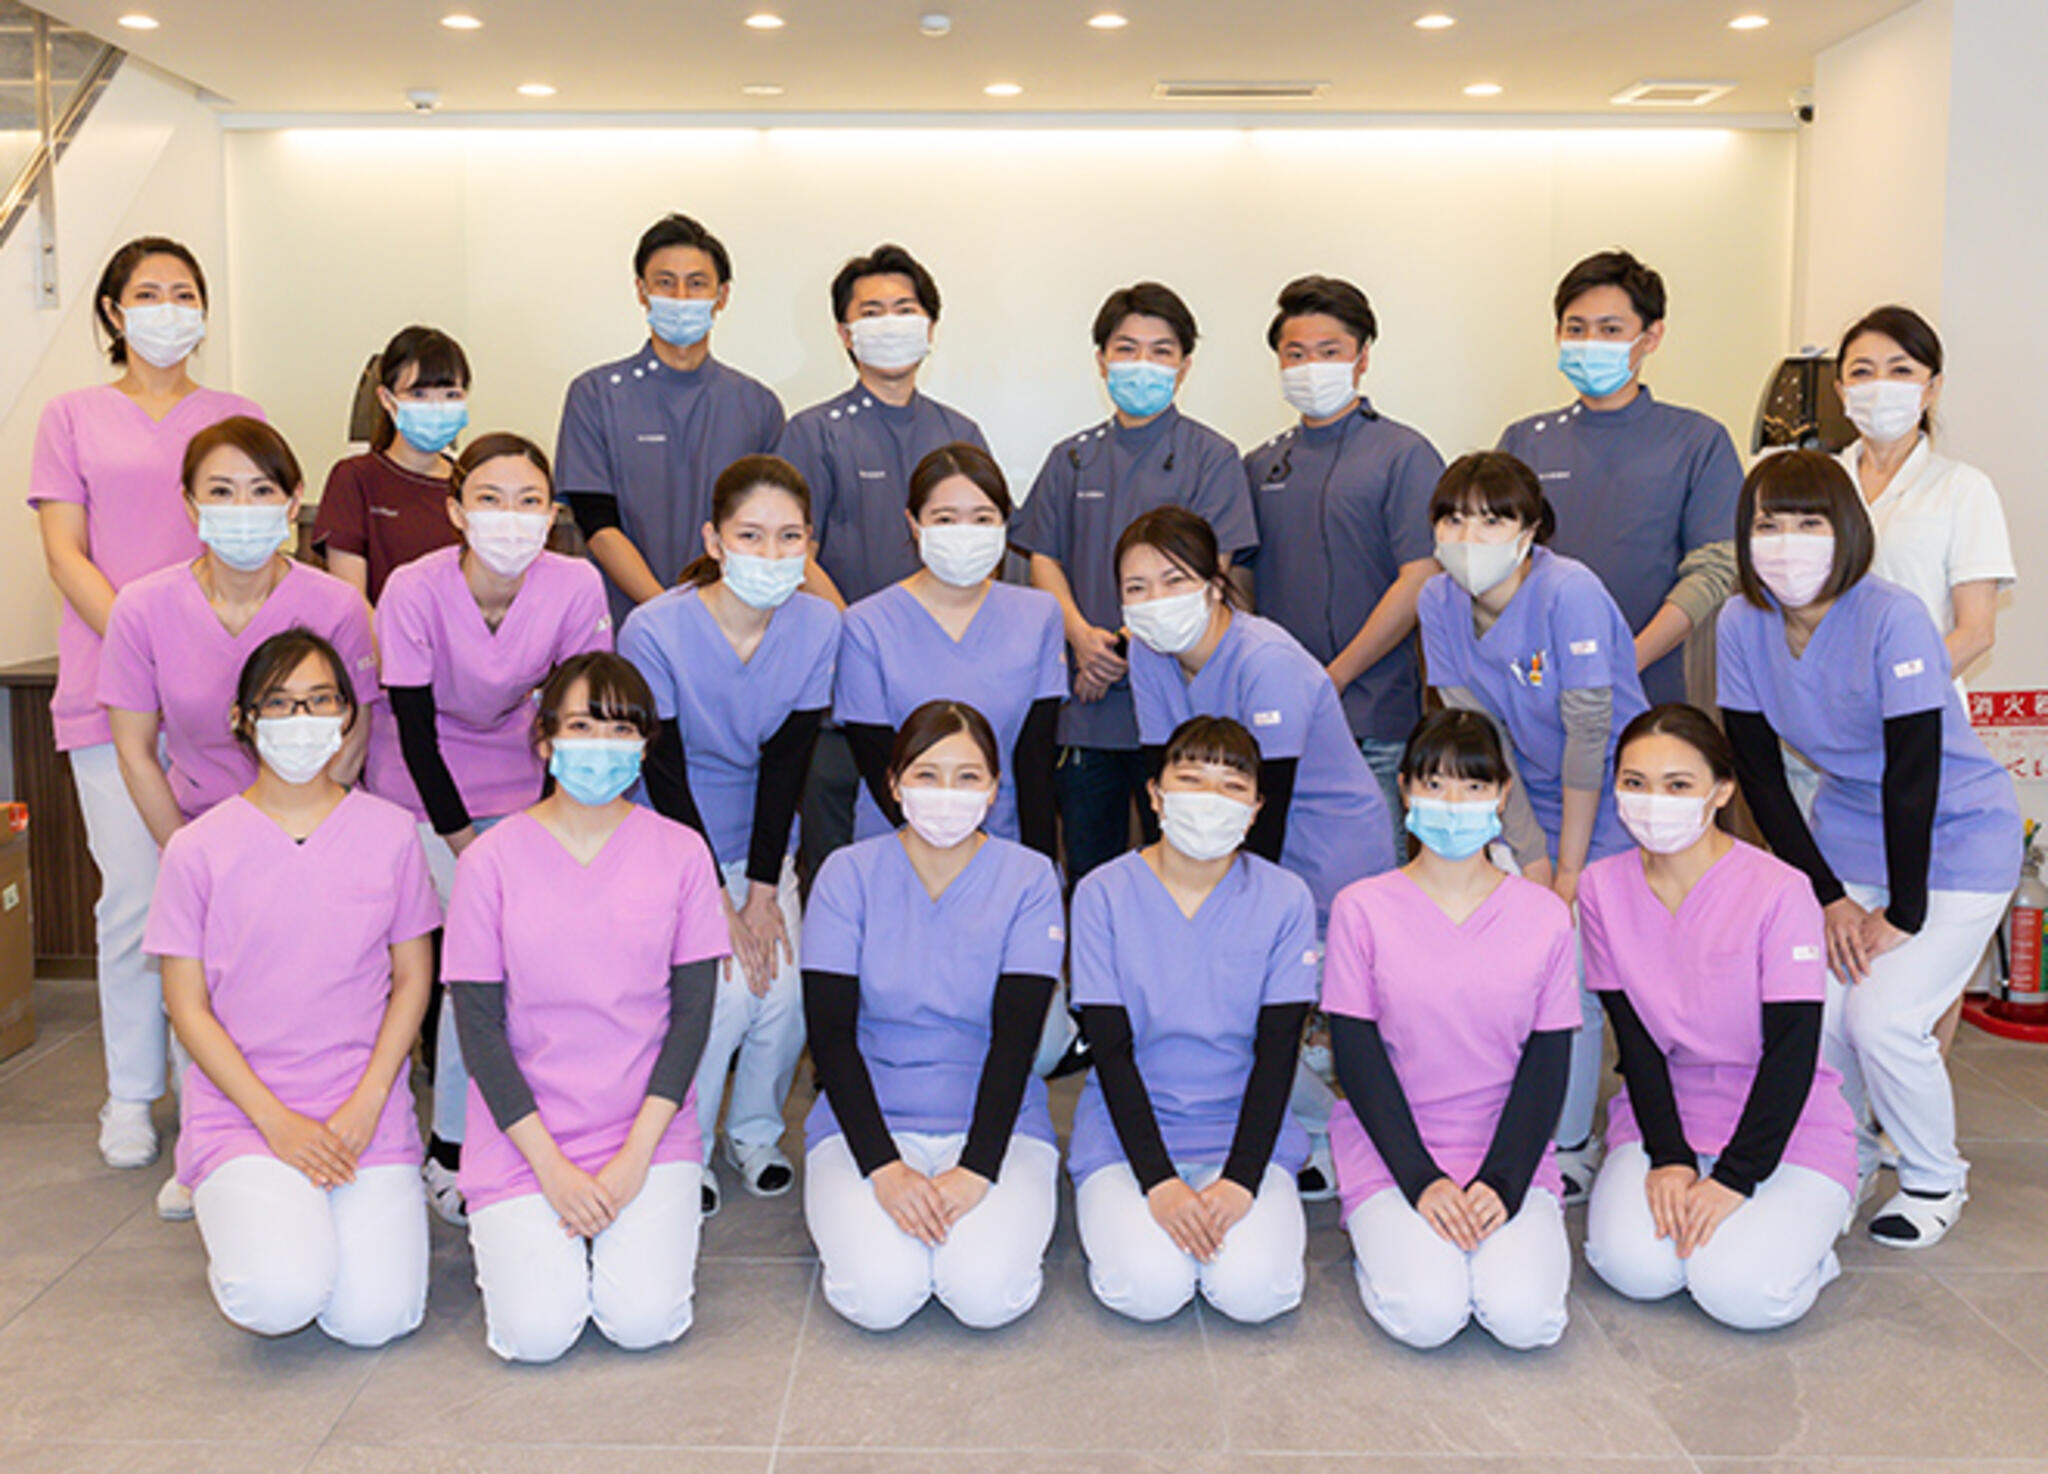 なぜ、名古屋歯科医院は人口わずか3万人の田舎町で週4日しか診療しなく 